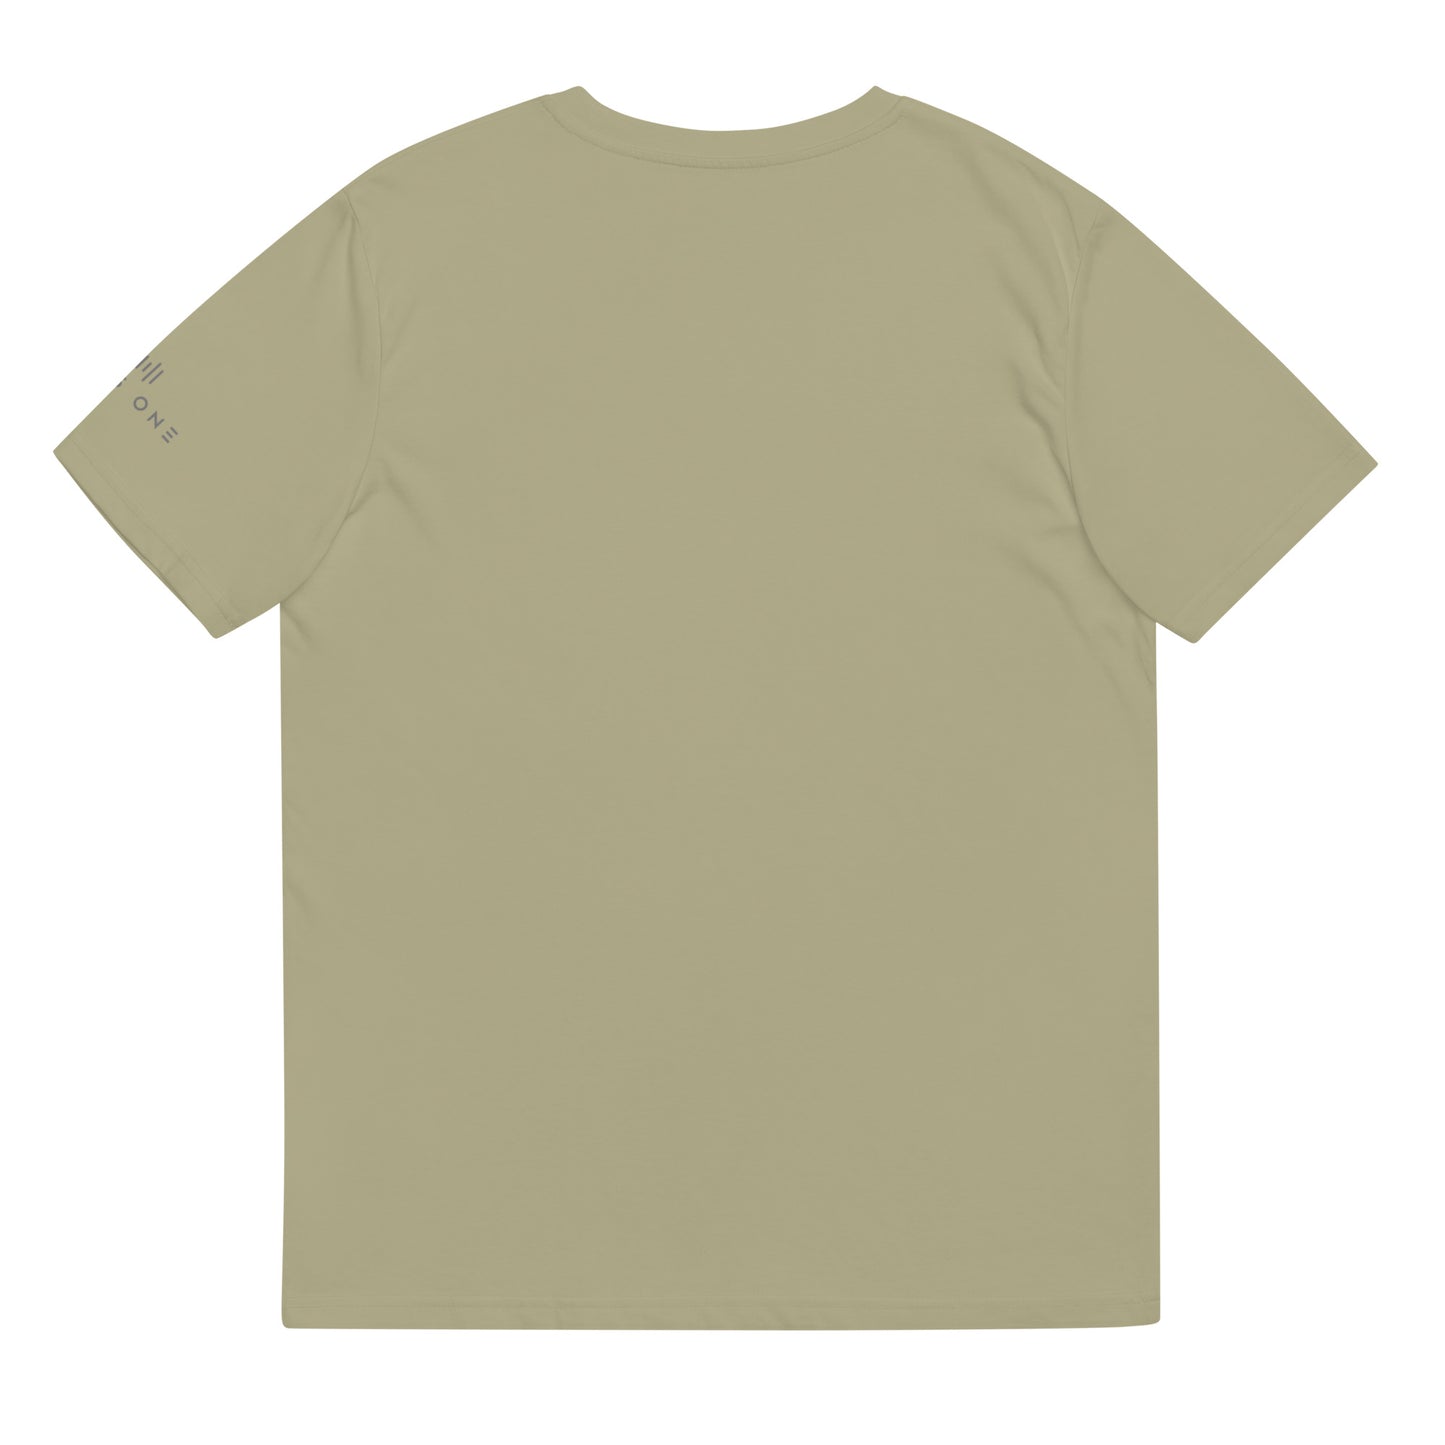 Tribe Mic-e (v1) Unisex organic cotton t-shirt